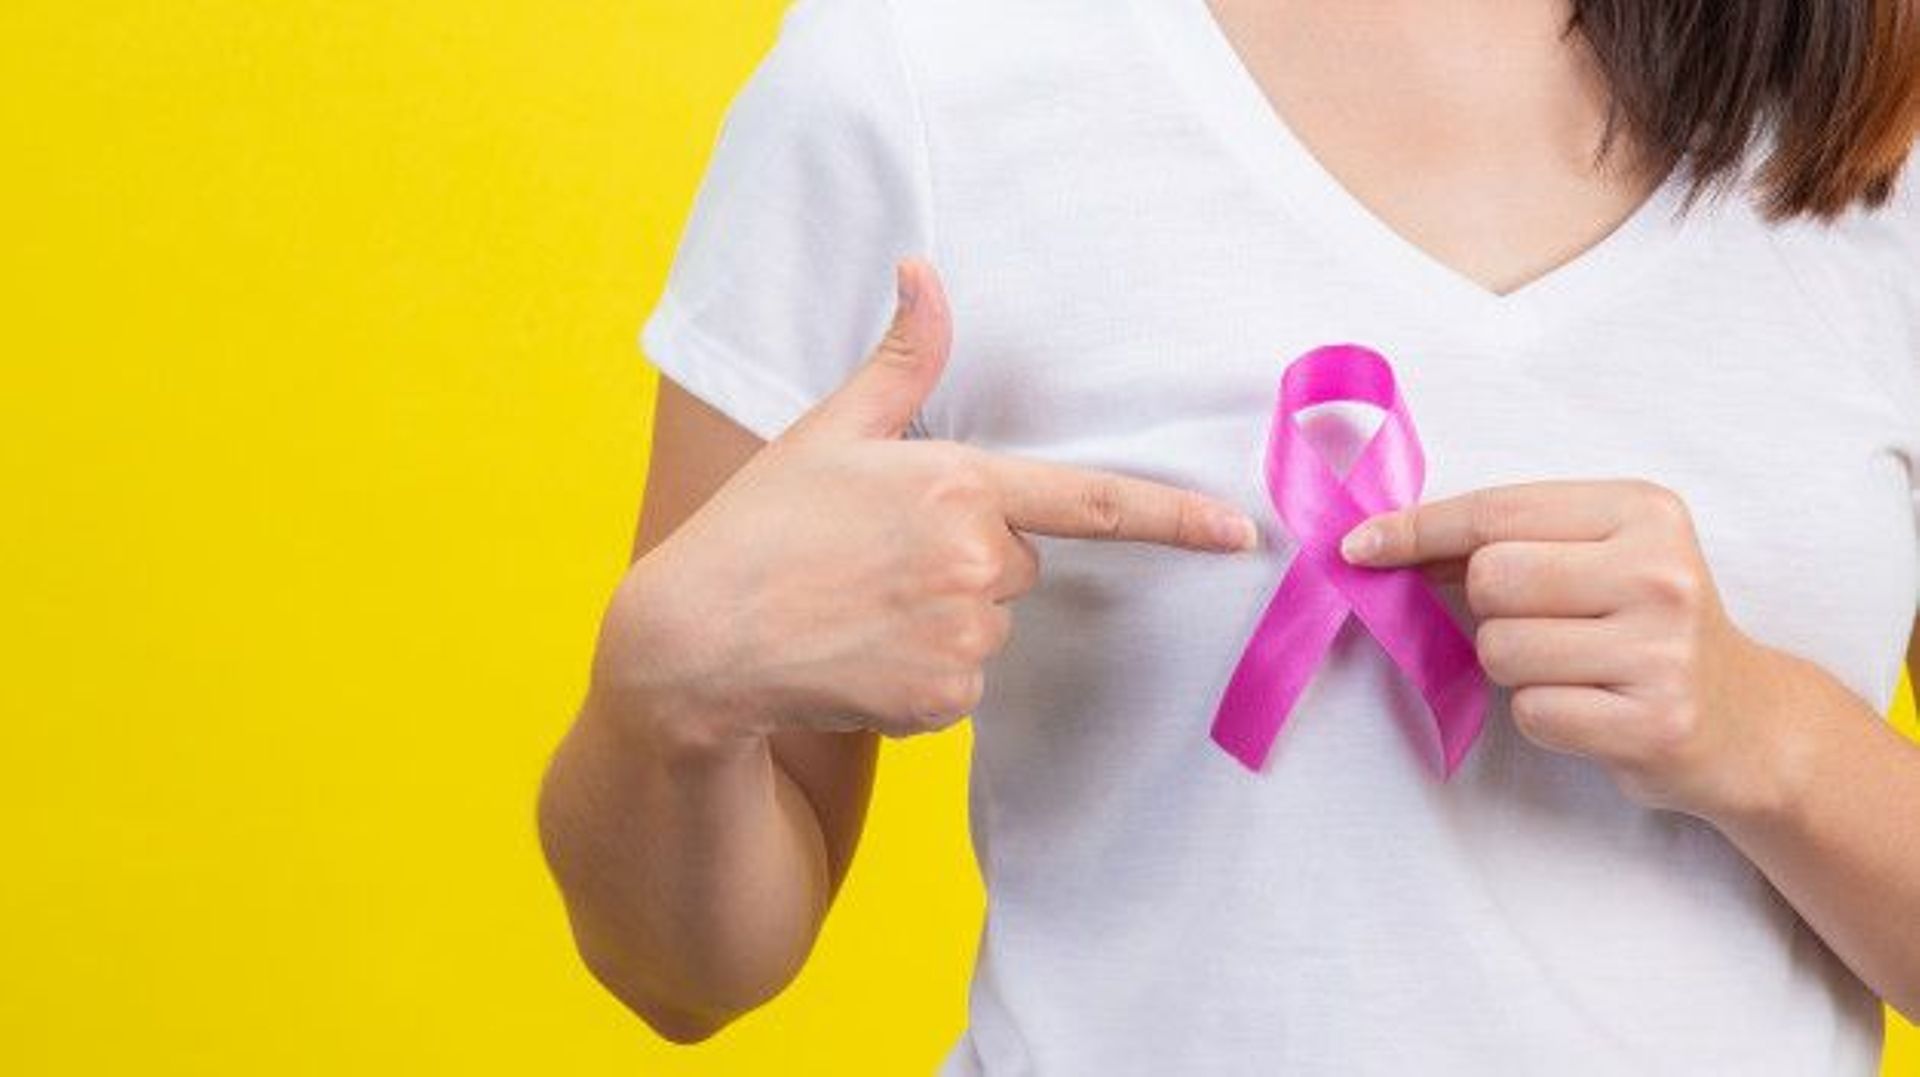 Une nouvelle étude prometteuse pour détecter plus facilement le cancer du sein?